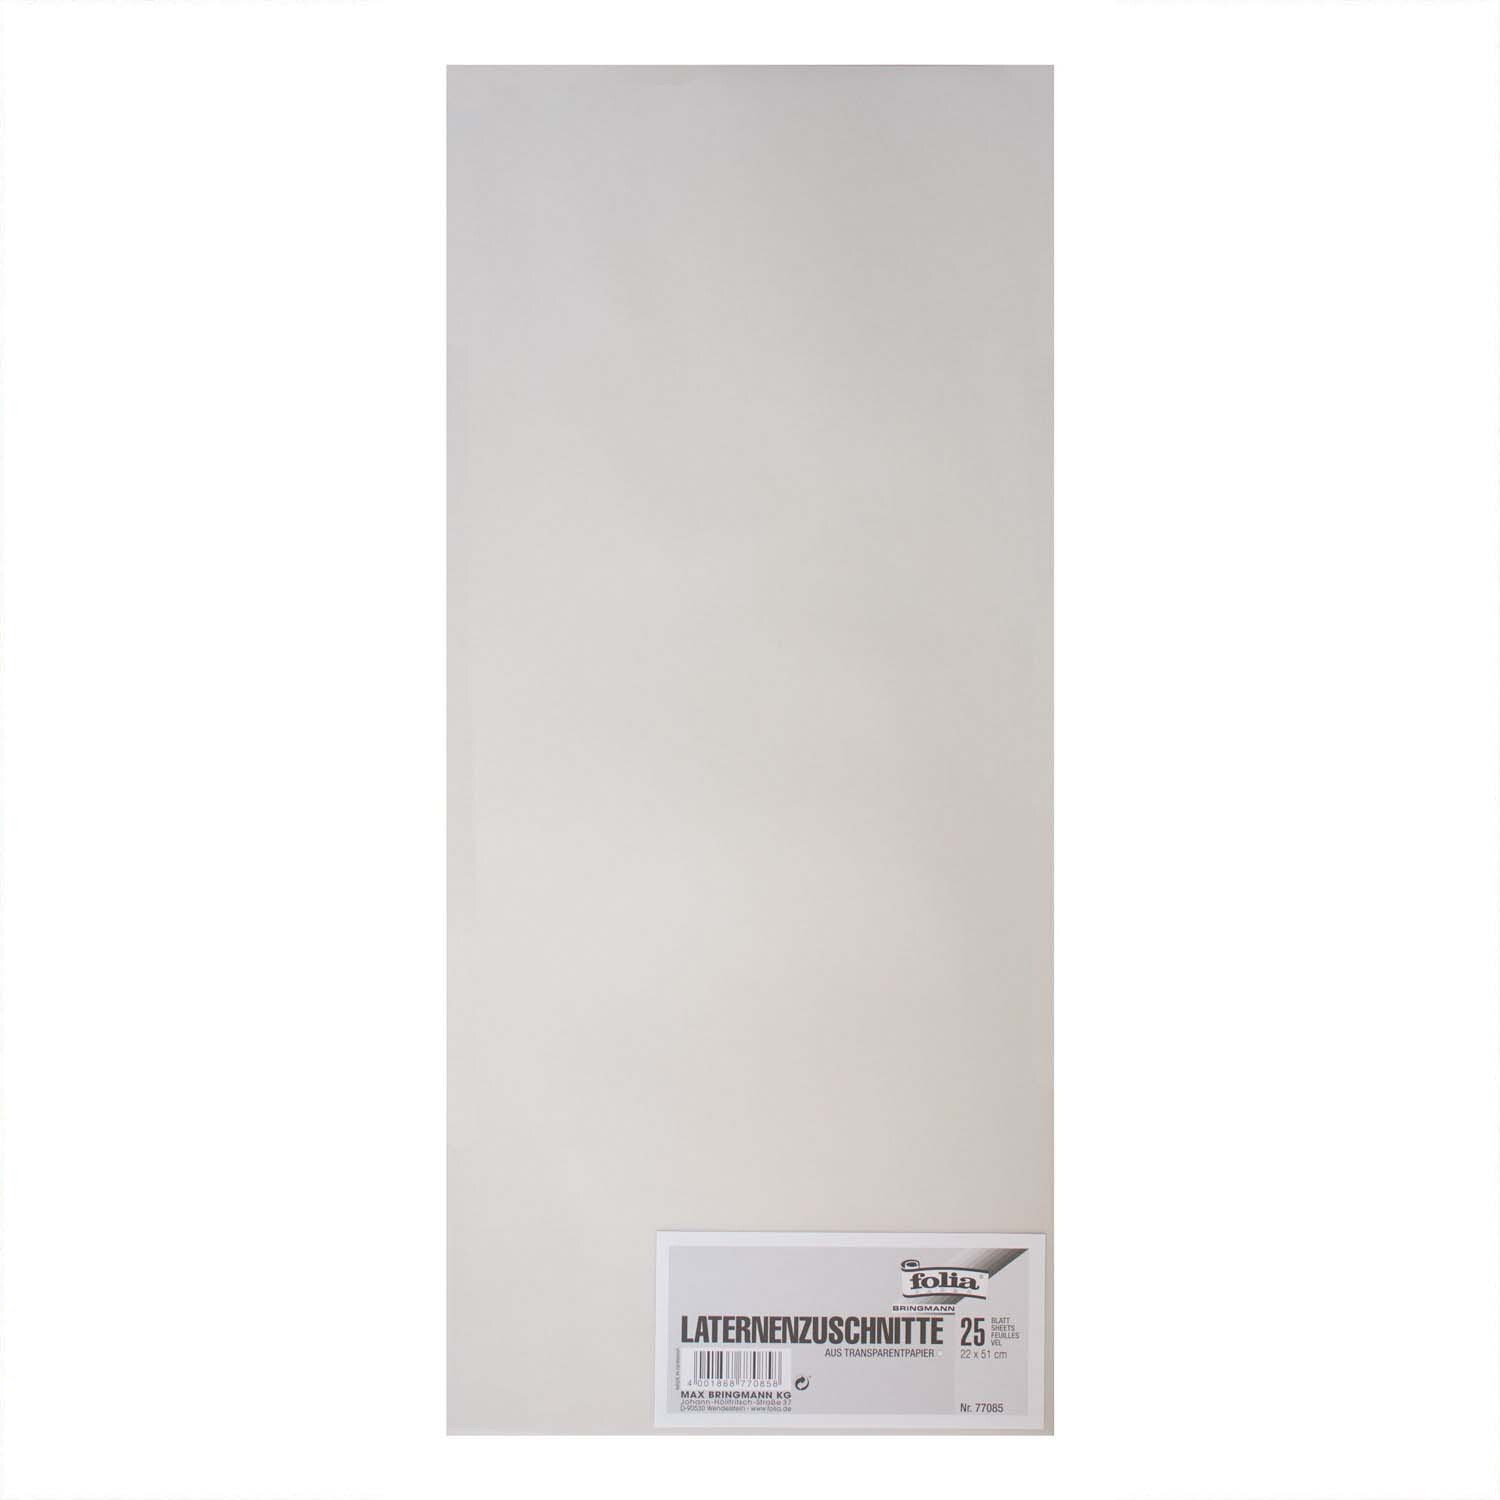 Laternenzuschnitte Transparentpapier weiß 22x51cm 25 Bogen